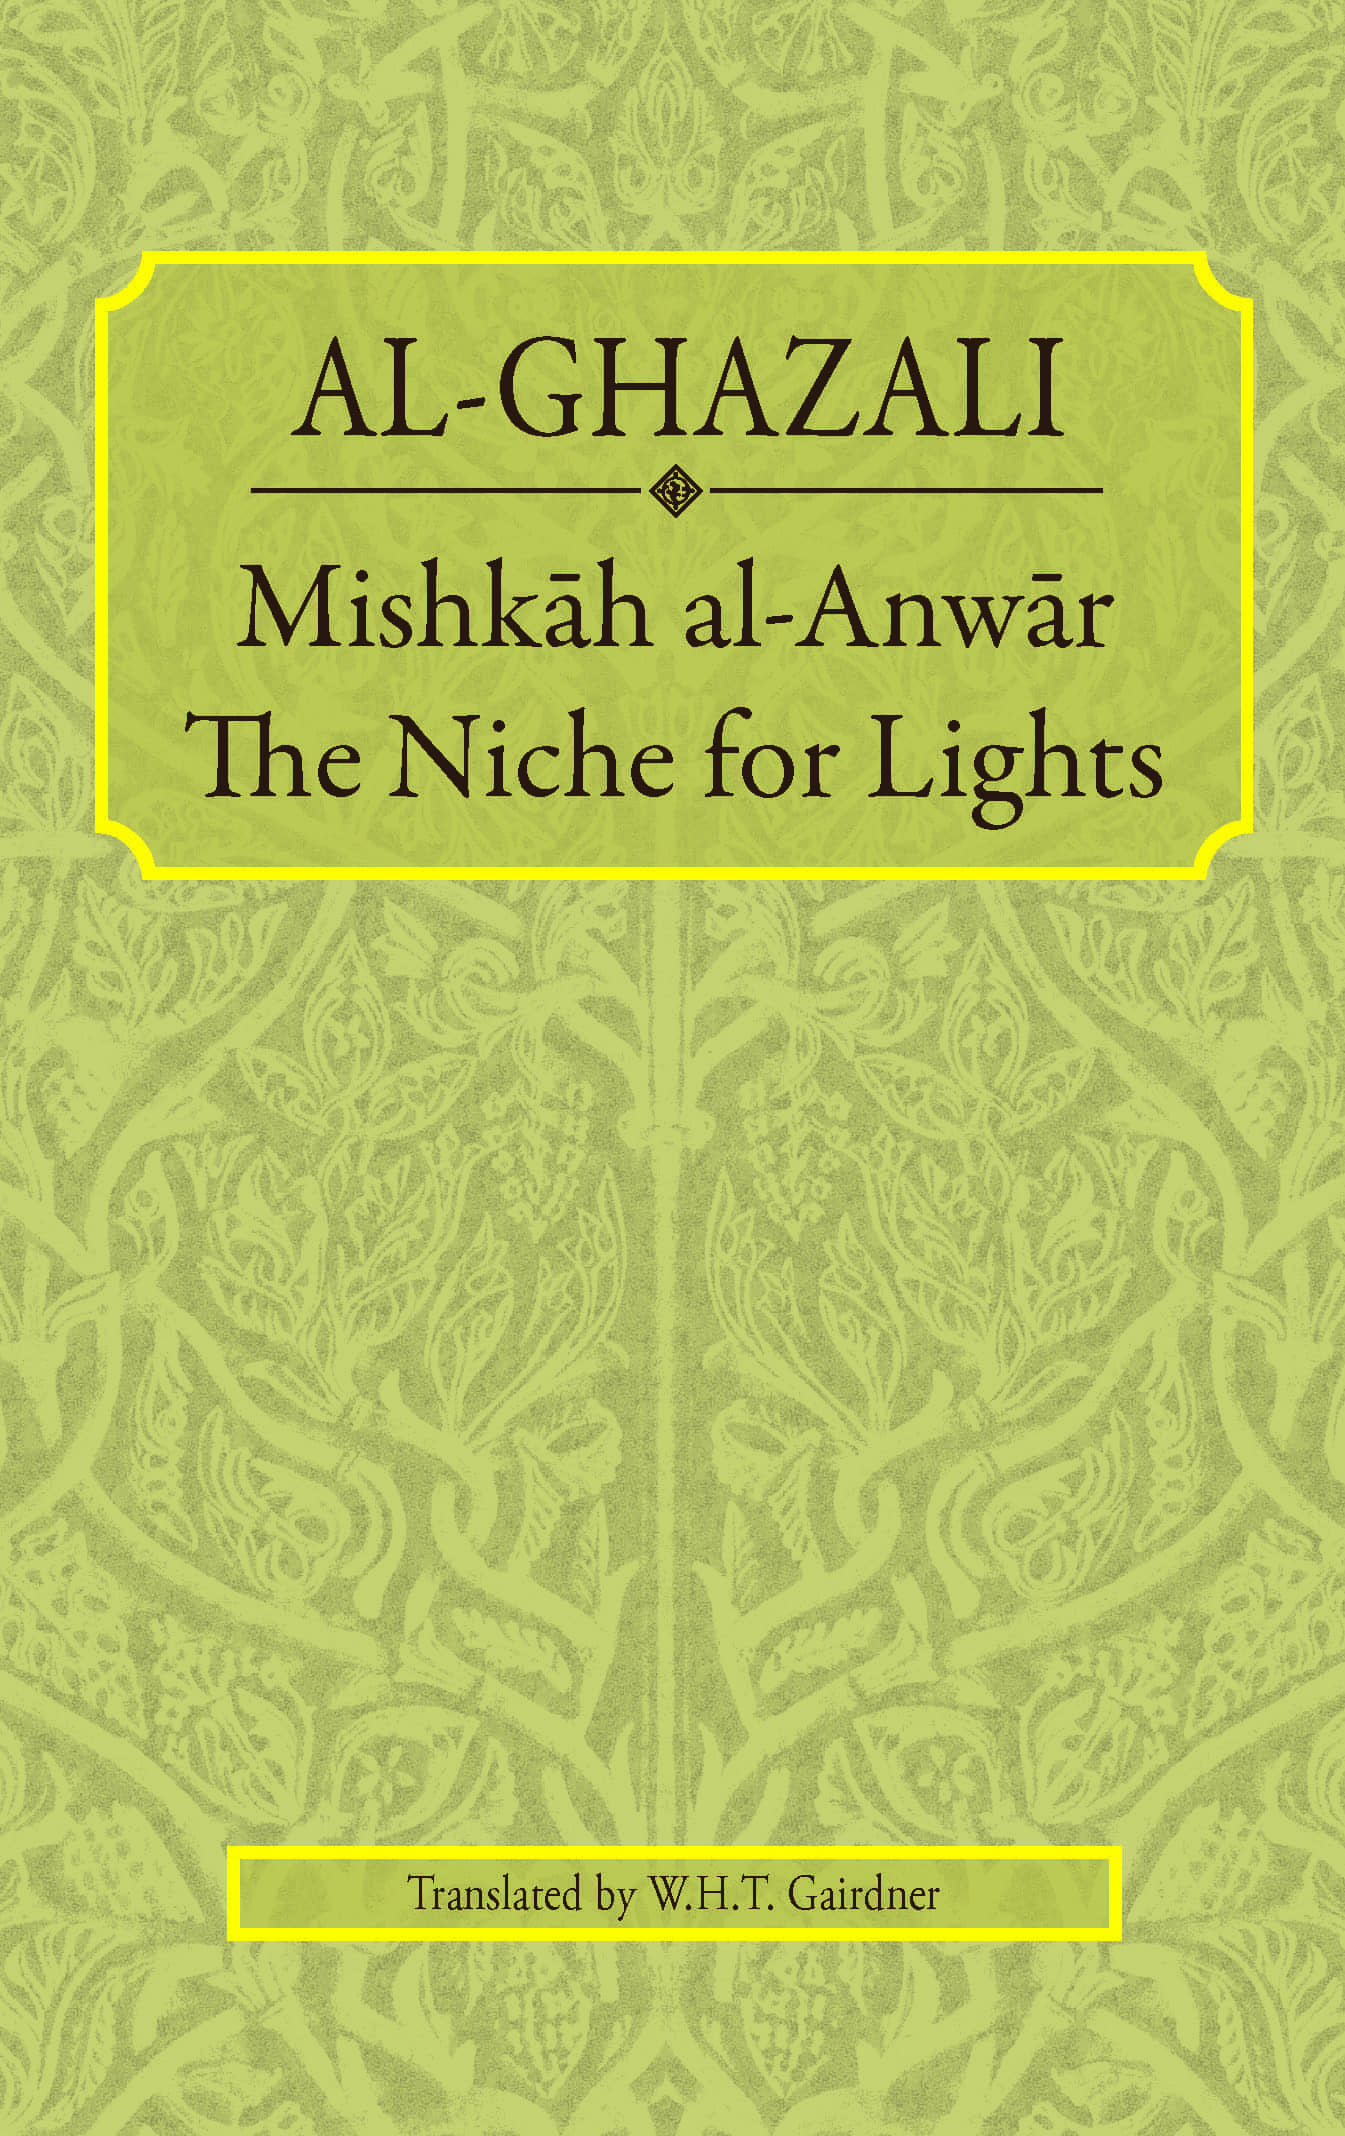 Mishkah al-Anwar: The Niche for Lights